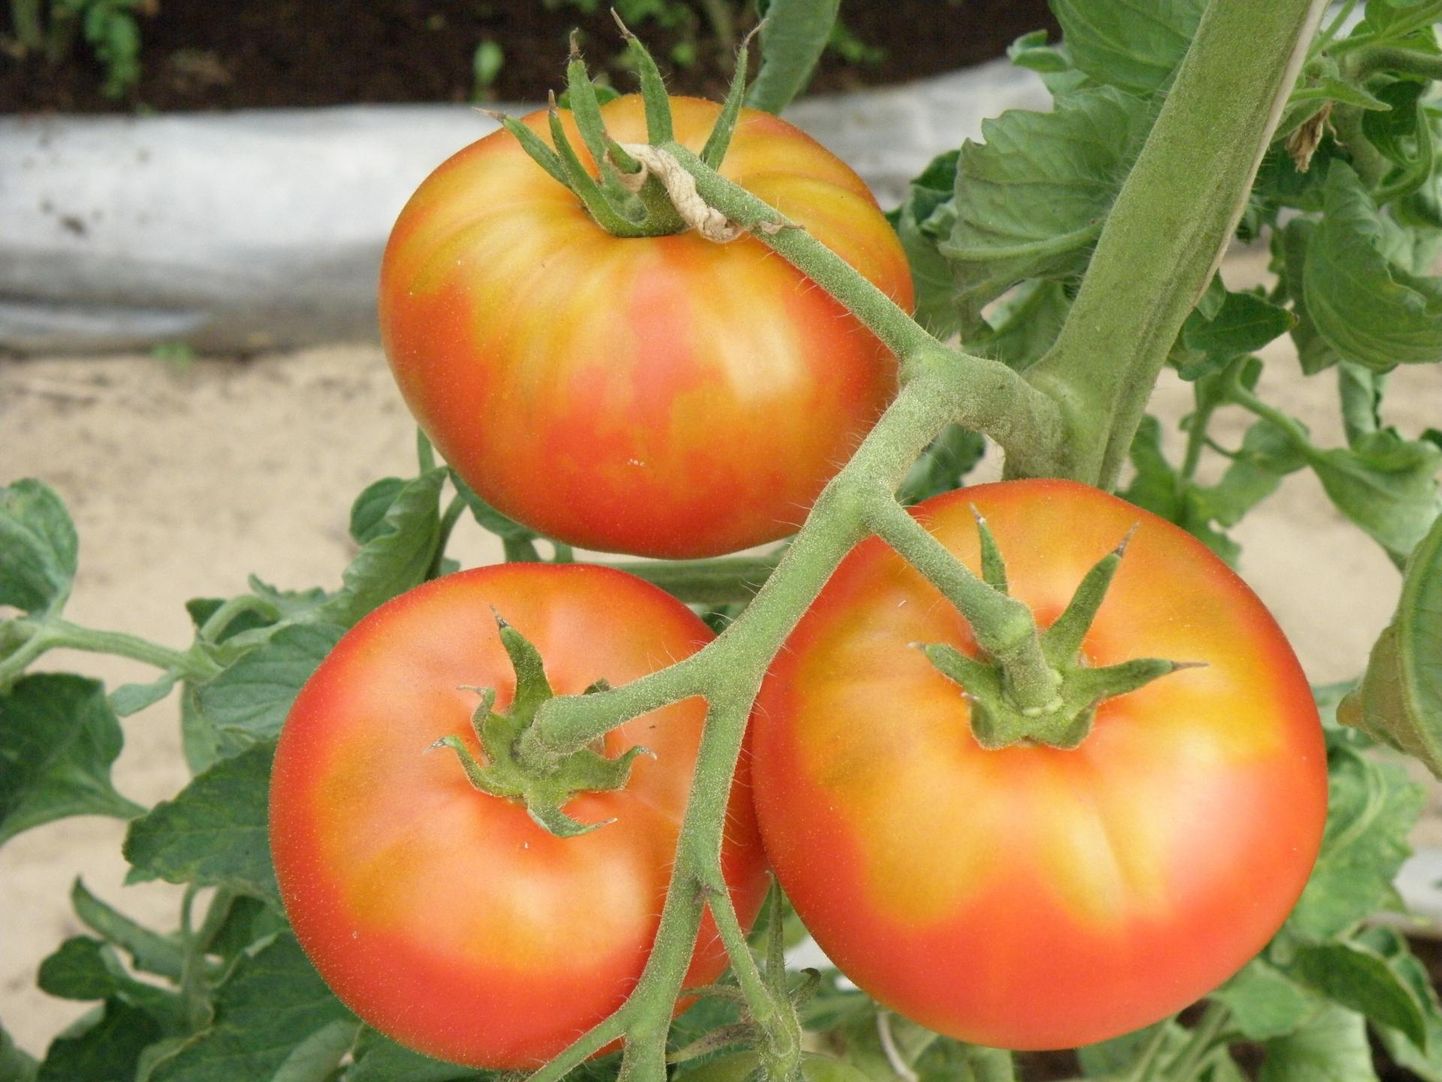 Kollased kõvad laigud tekivad, kui muld on liiga kuiv või mulla pH tomatile ­ebasobiv.